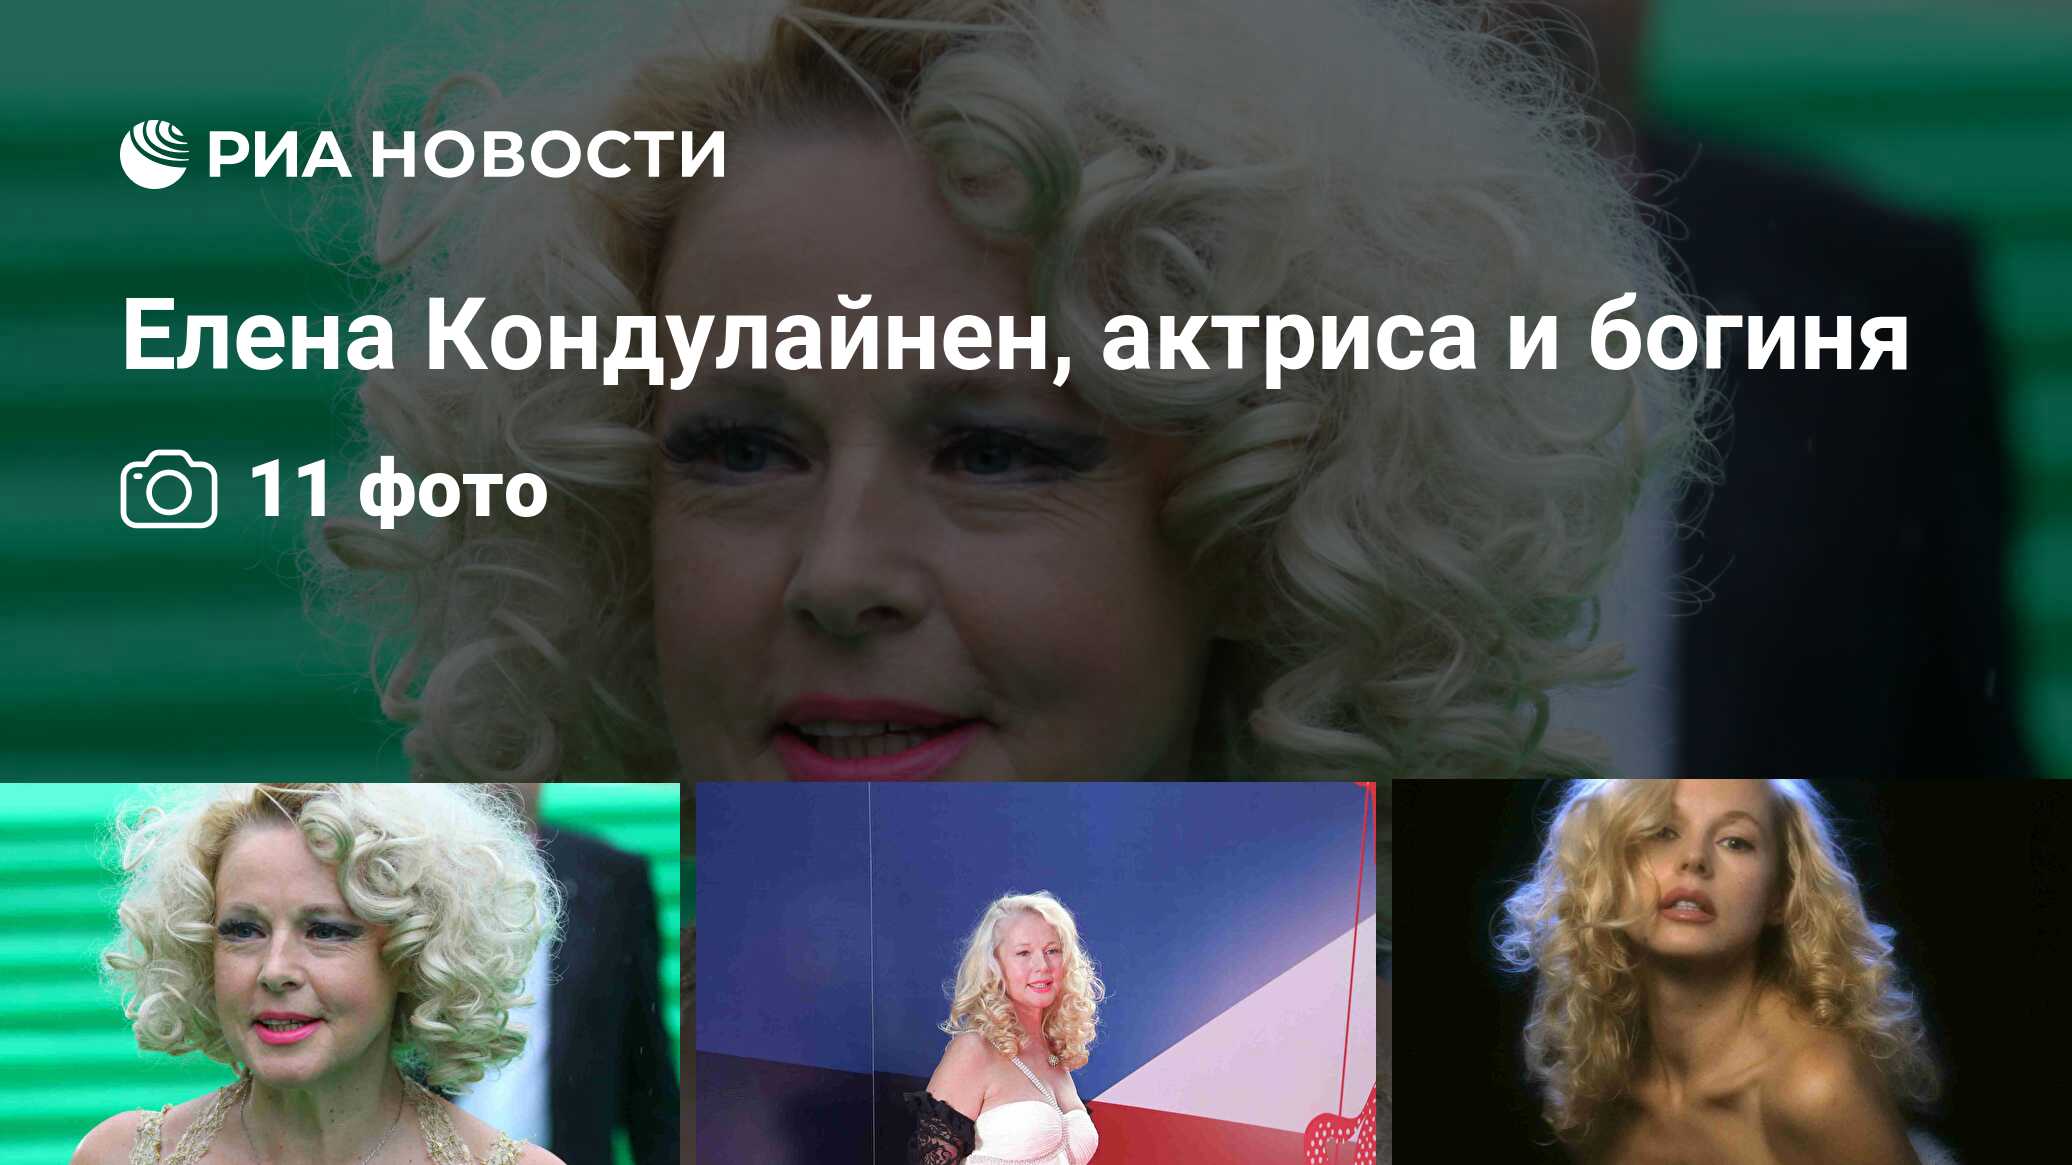 Елена Кондулайнен, актриса и богиня - РИА Новости, 18.09.2013